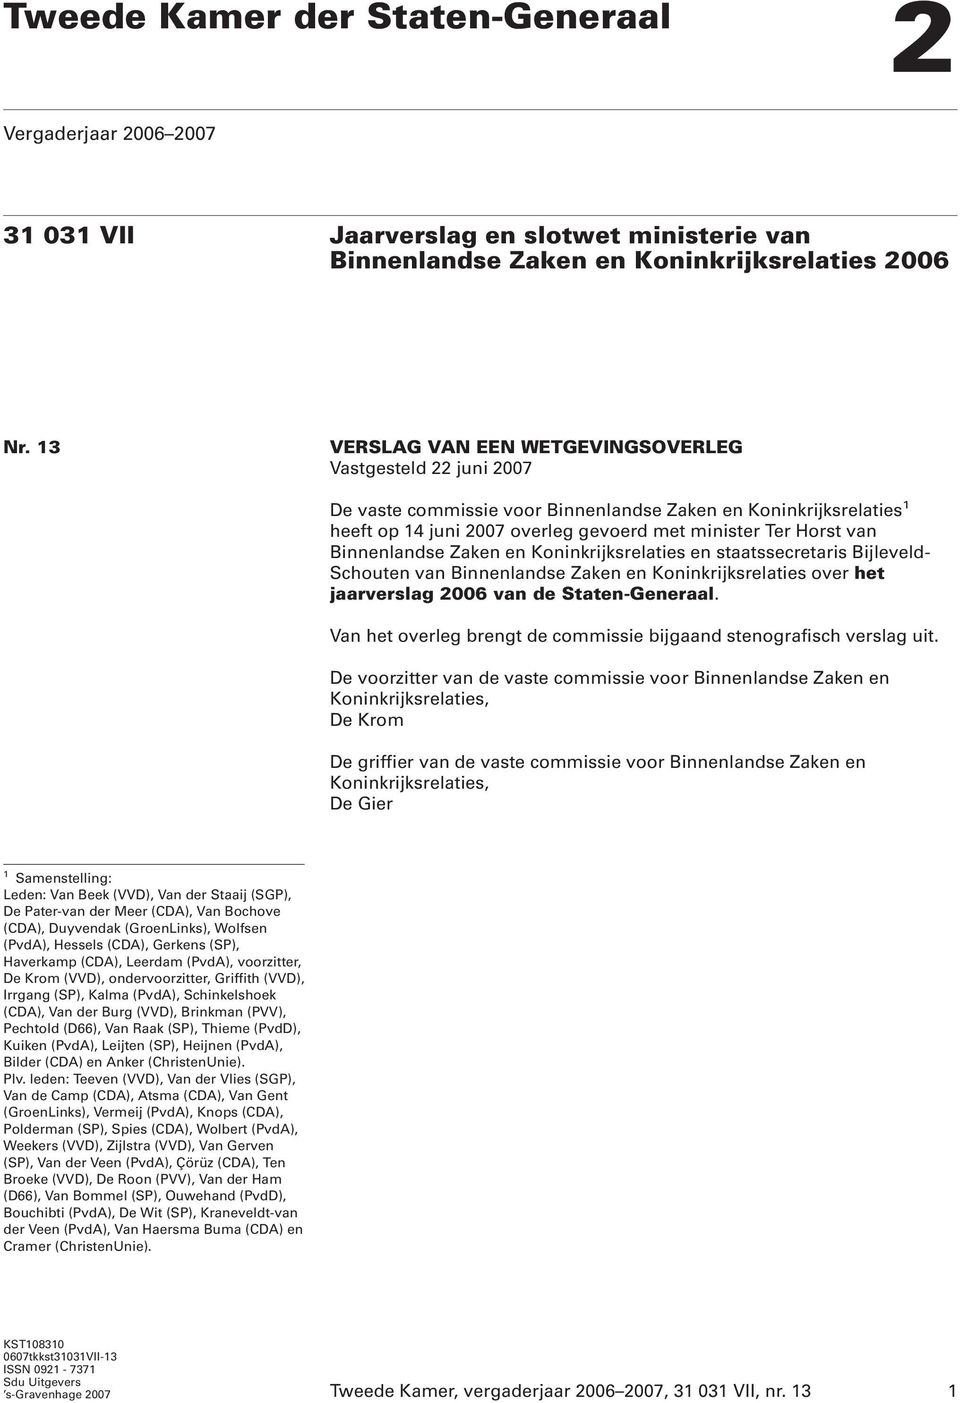 Binnenlandse Zaken en Koninkrijksrelaties en staatssecretaris Bijleveld- Schouten van Binnenlandse Zaken en Koninkrijksrelaties over het jaarverslag 2006 van de Staten-Generaal.